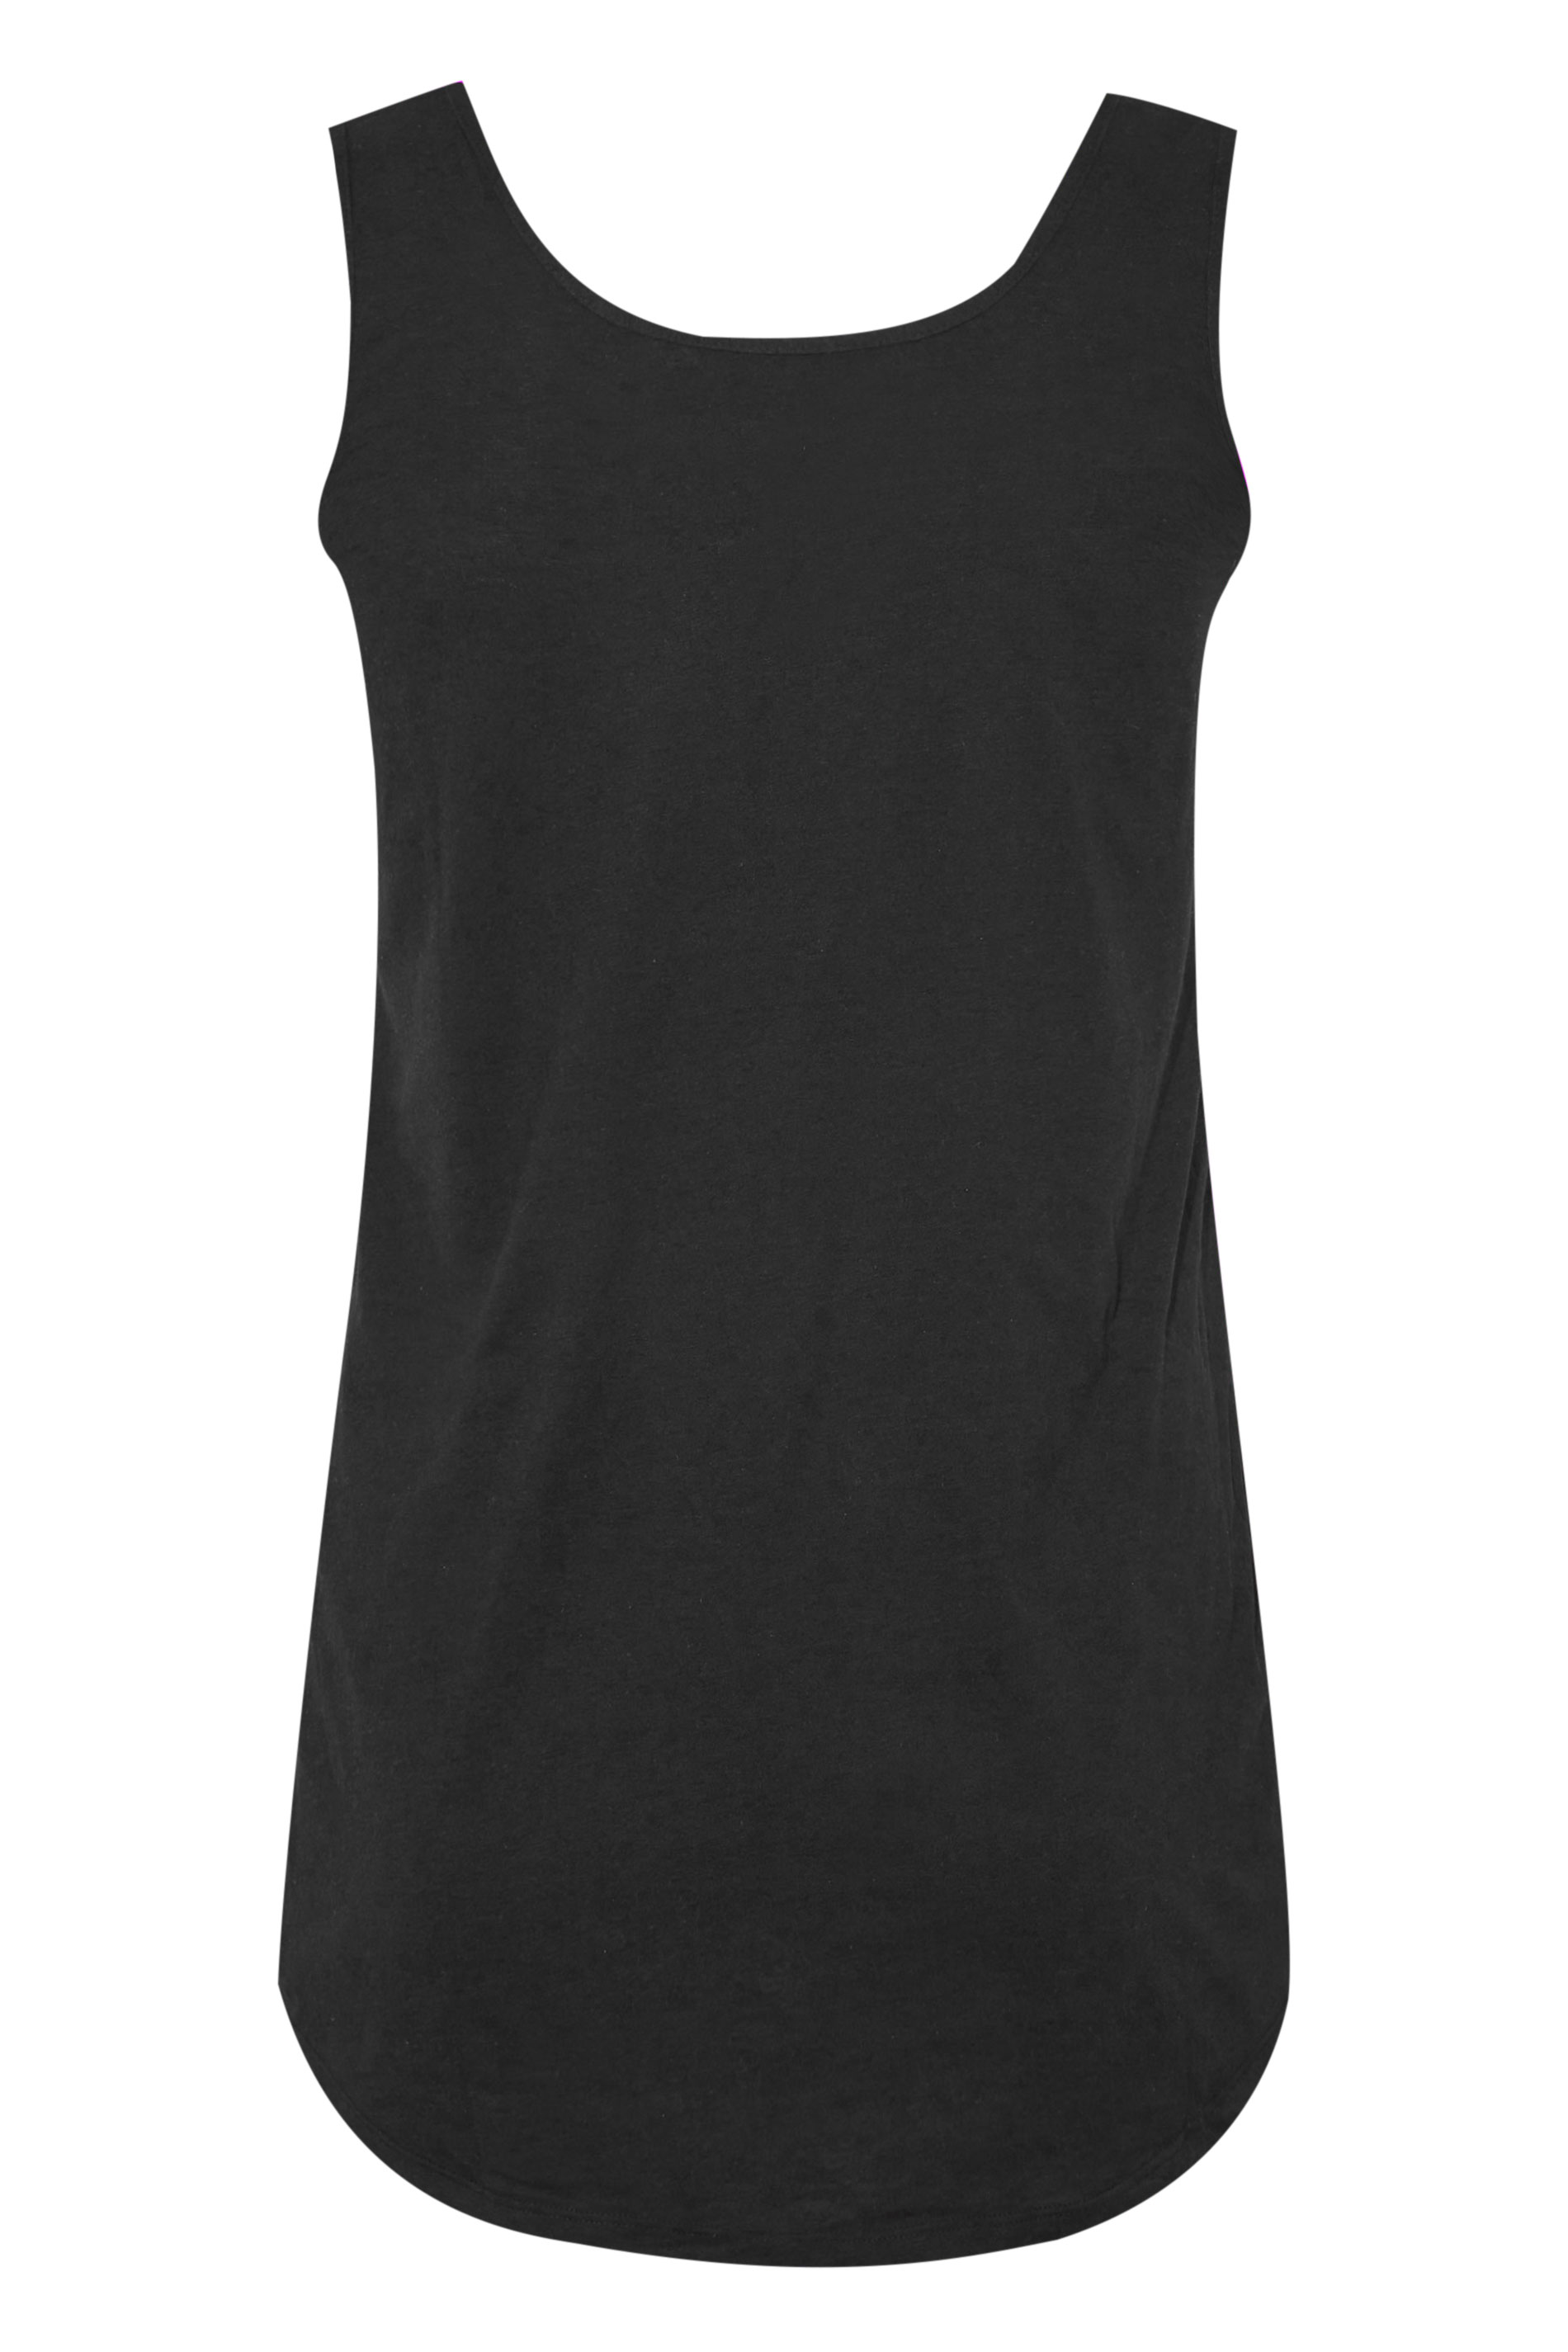 Grande taille  Tops Grande taille  T-Shirts Basiques & Débardeurs | Débardeur Noir Basique - LS27058